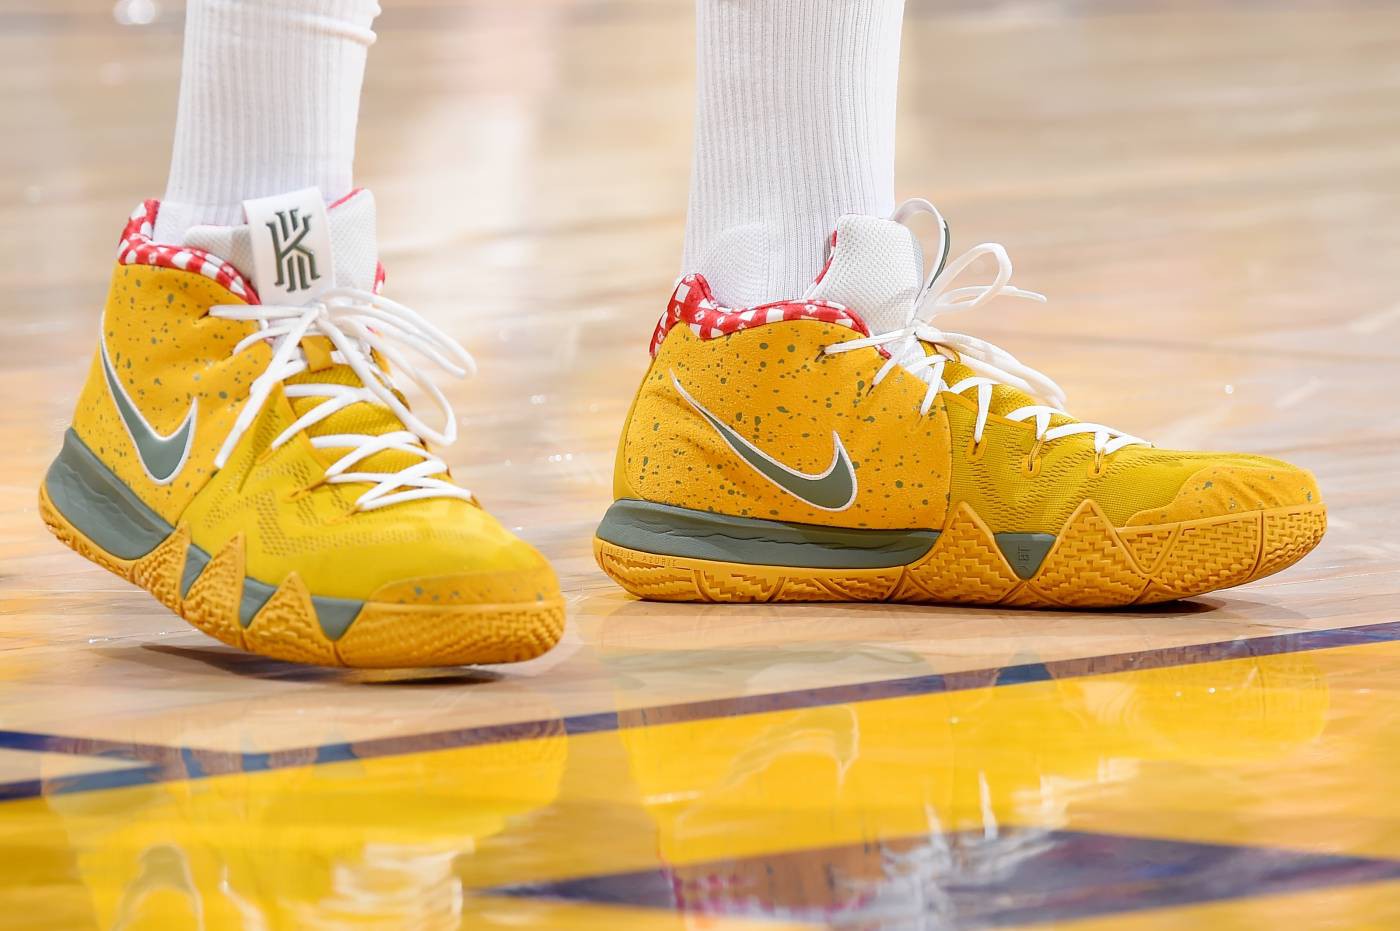 Chi tiết và đầy đủ các mẫu giày khủng của Thánh giày P.J. Tucker đã mang tại NBA Playoffs 2018 - Ảnh 22.